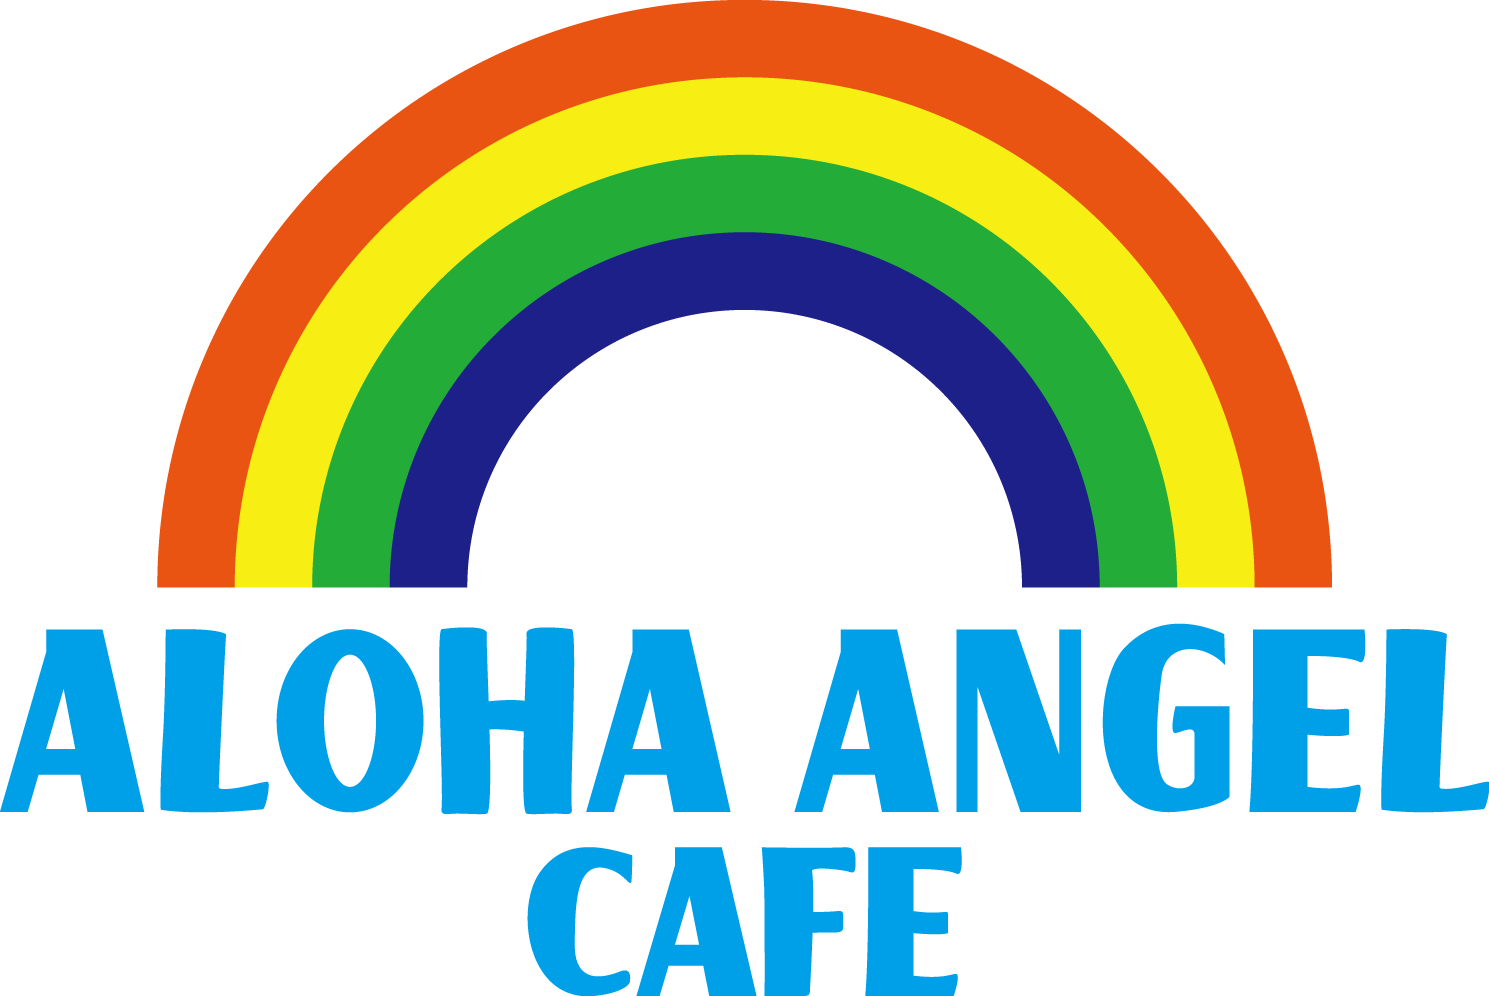 ALOHA ANGEL CAFE